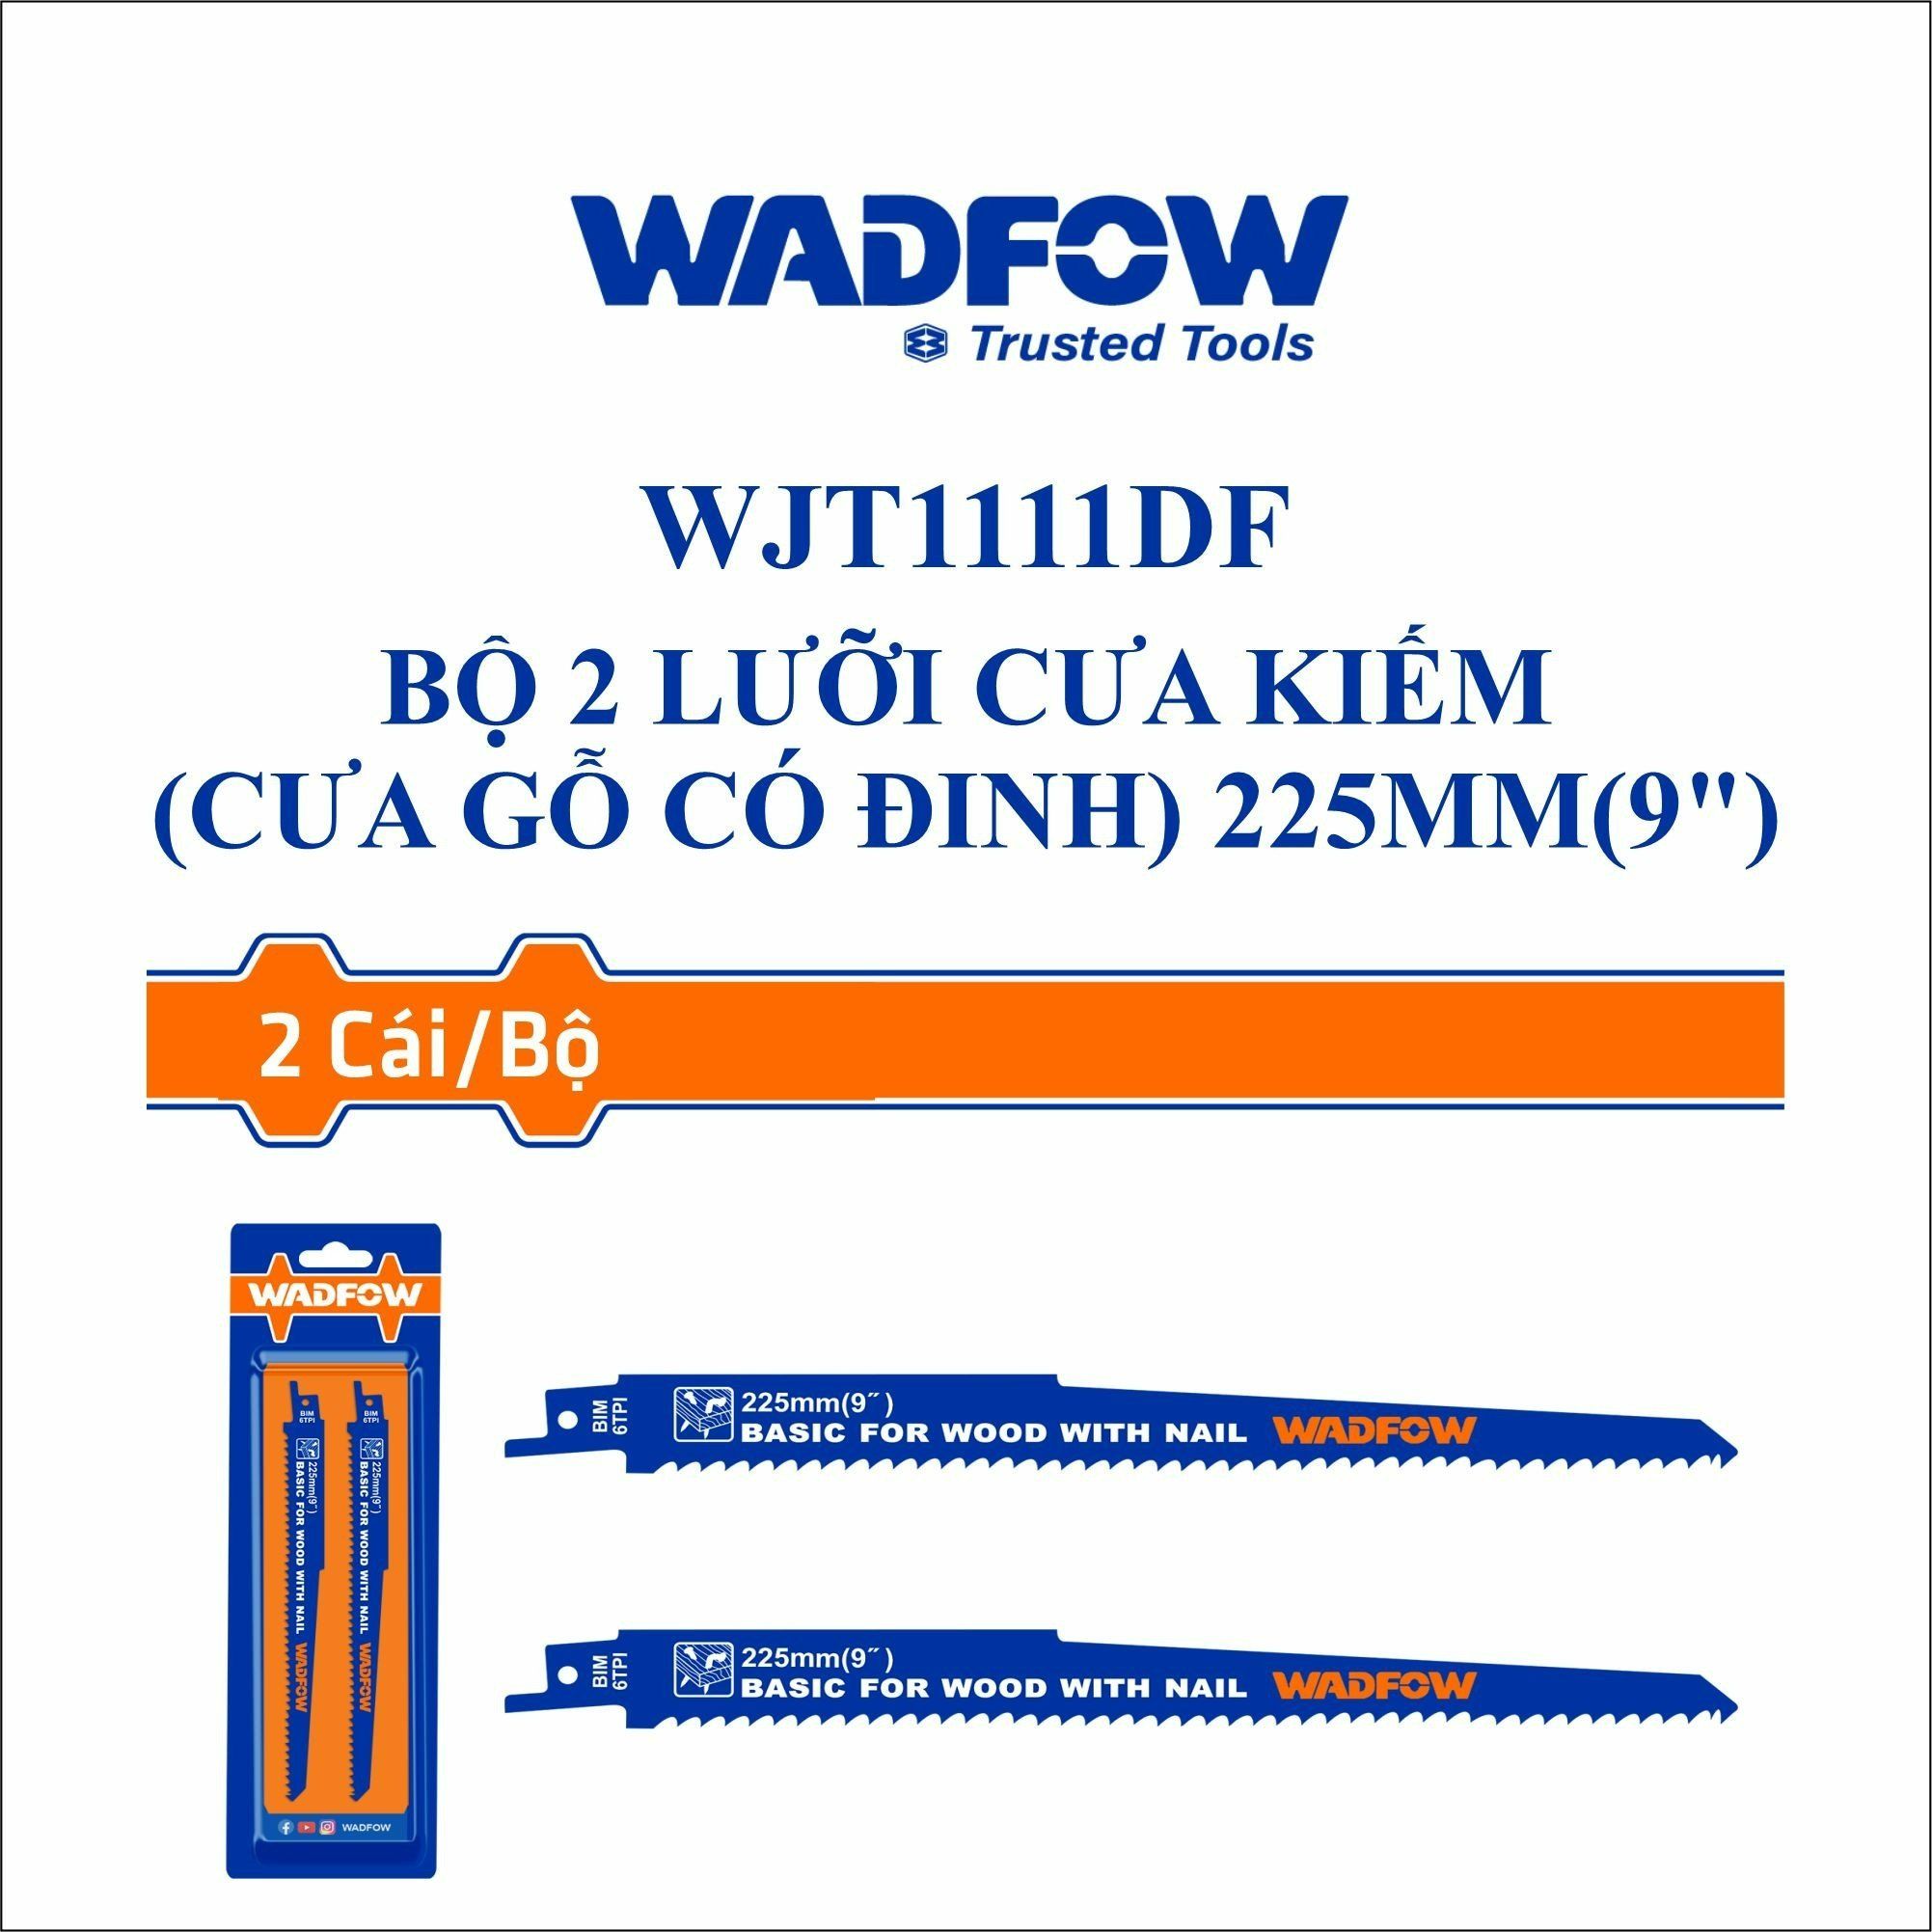  Bộ 2 lưỡi cưa kiếm (cưa gỗ có đinh) 225mm(9") WADFOW WJT1111DF 